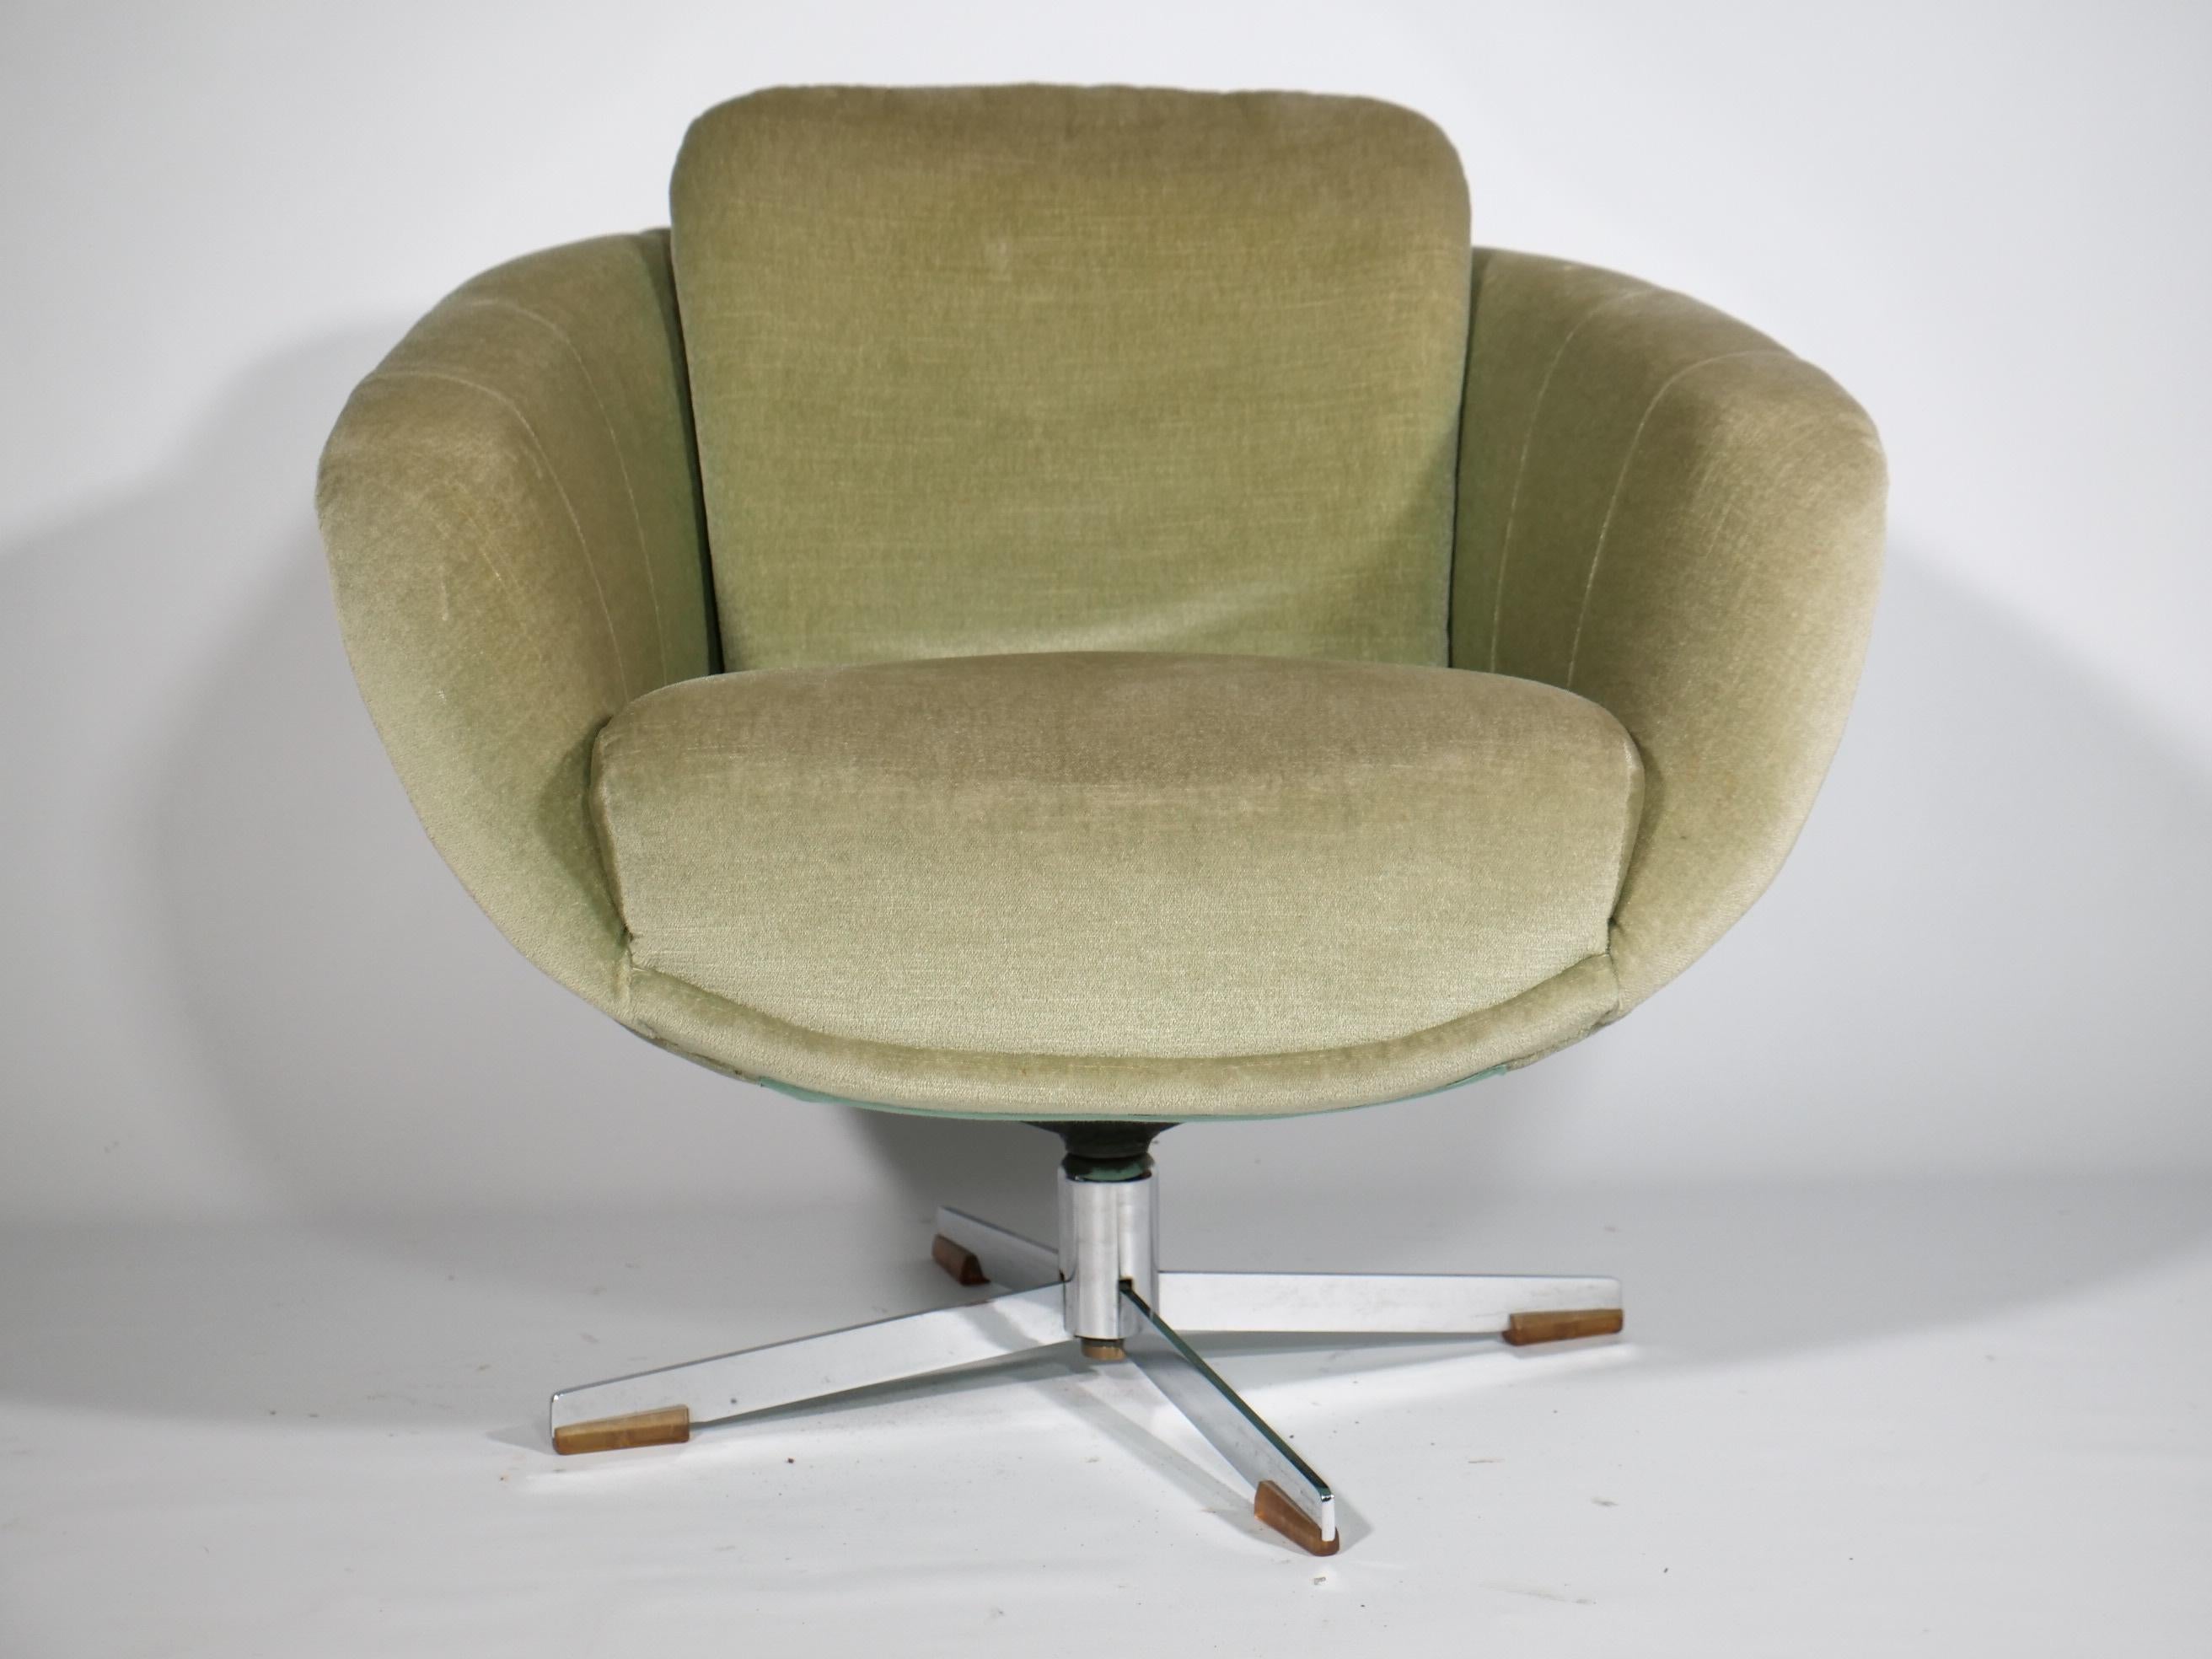 Lounge Sessel 60er 70er Jahre Design Drehsessel Mid Century Space Age 

Hellgrüne Space age Sessel original aus der Zeit - super Zustand! 

Breite: 77 cm 
Höhe: 88 cm 
Tiefe: 77 cm 
Sitzhöhe: 45 cm 